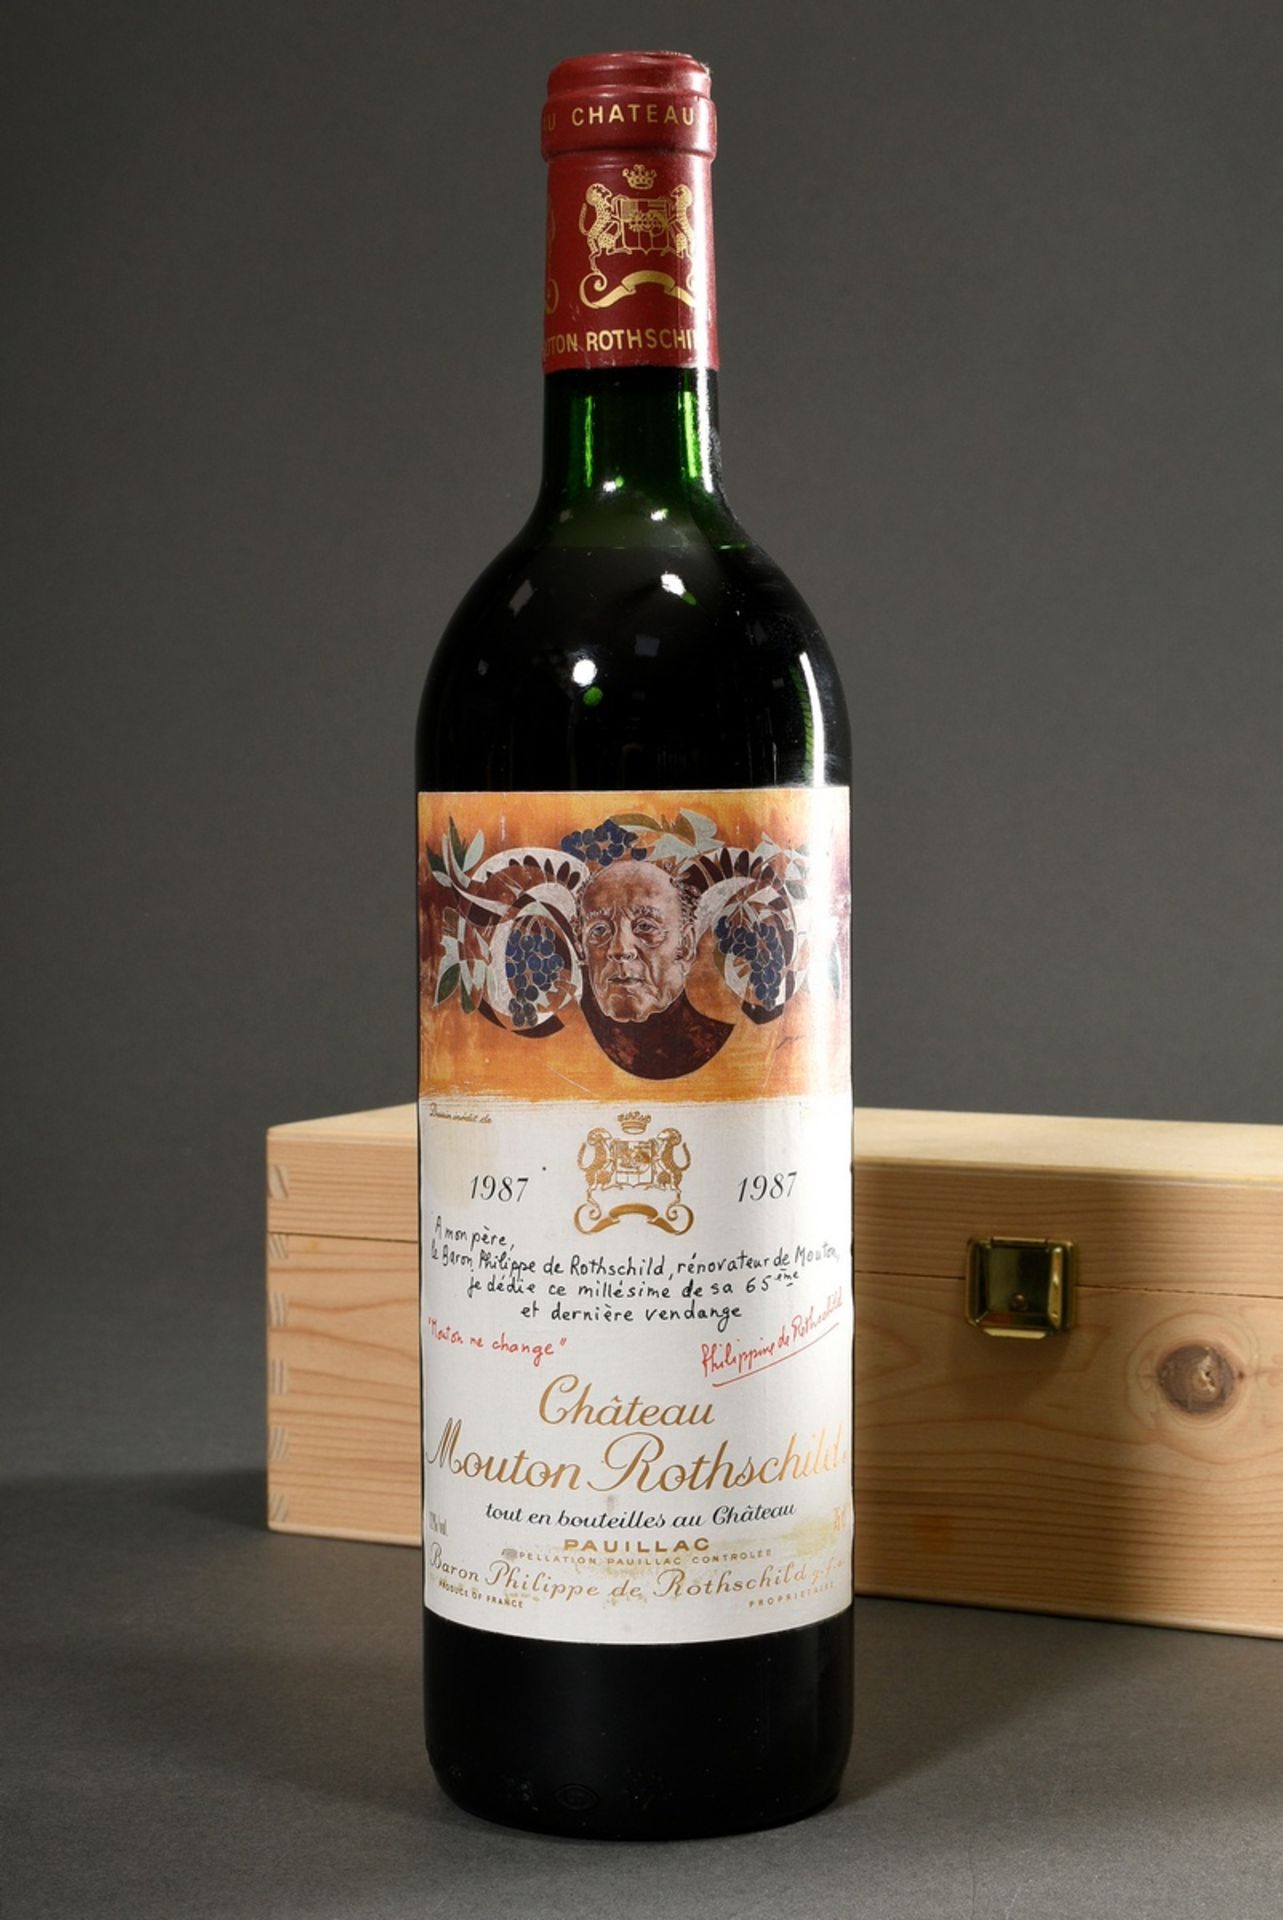 Bottle 1987 Château Mouton Rothschild, Bordeaux, Pauillac, 0,75l, collector's edition, design Hans 